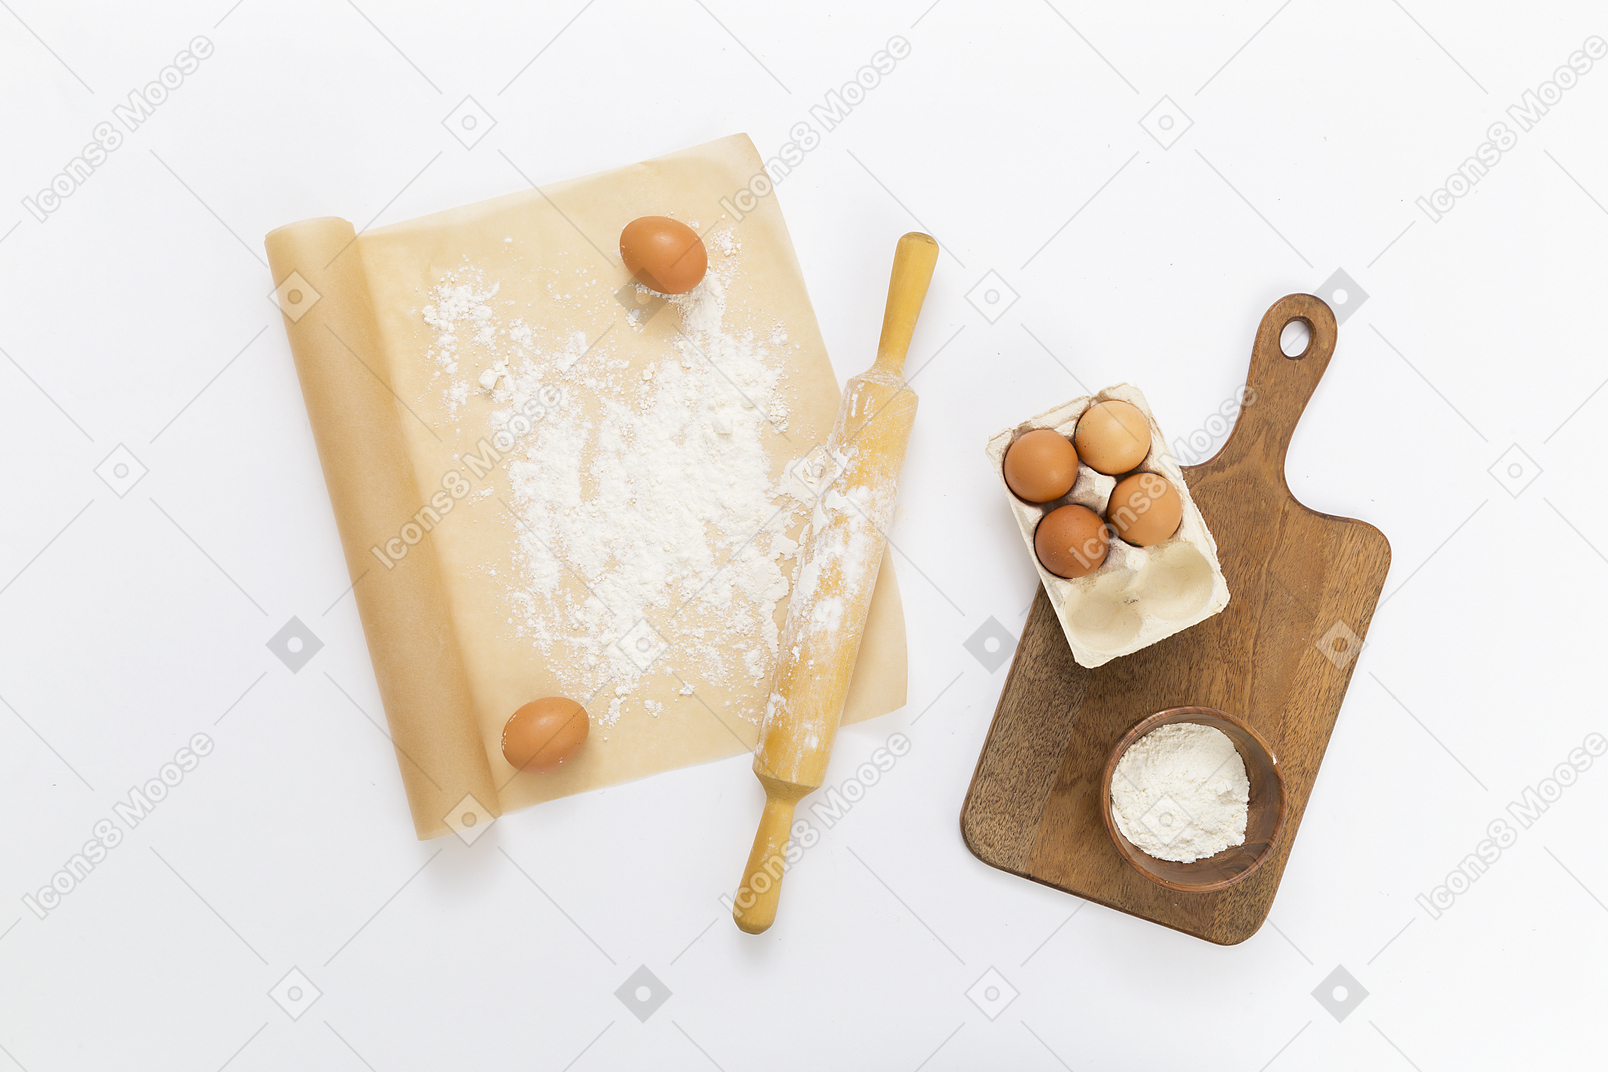 Papier sulfurisé, rouleau à pâtisserie, œufs et planche à découper